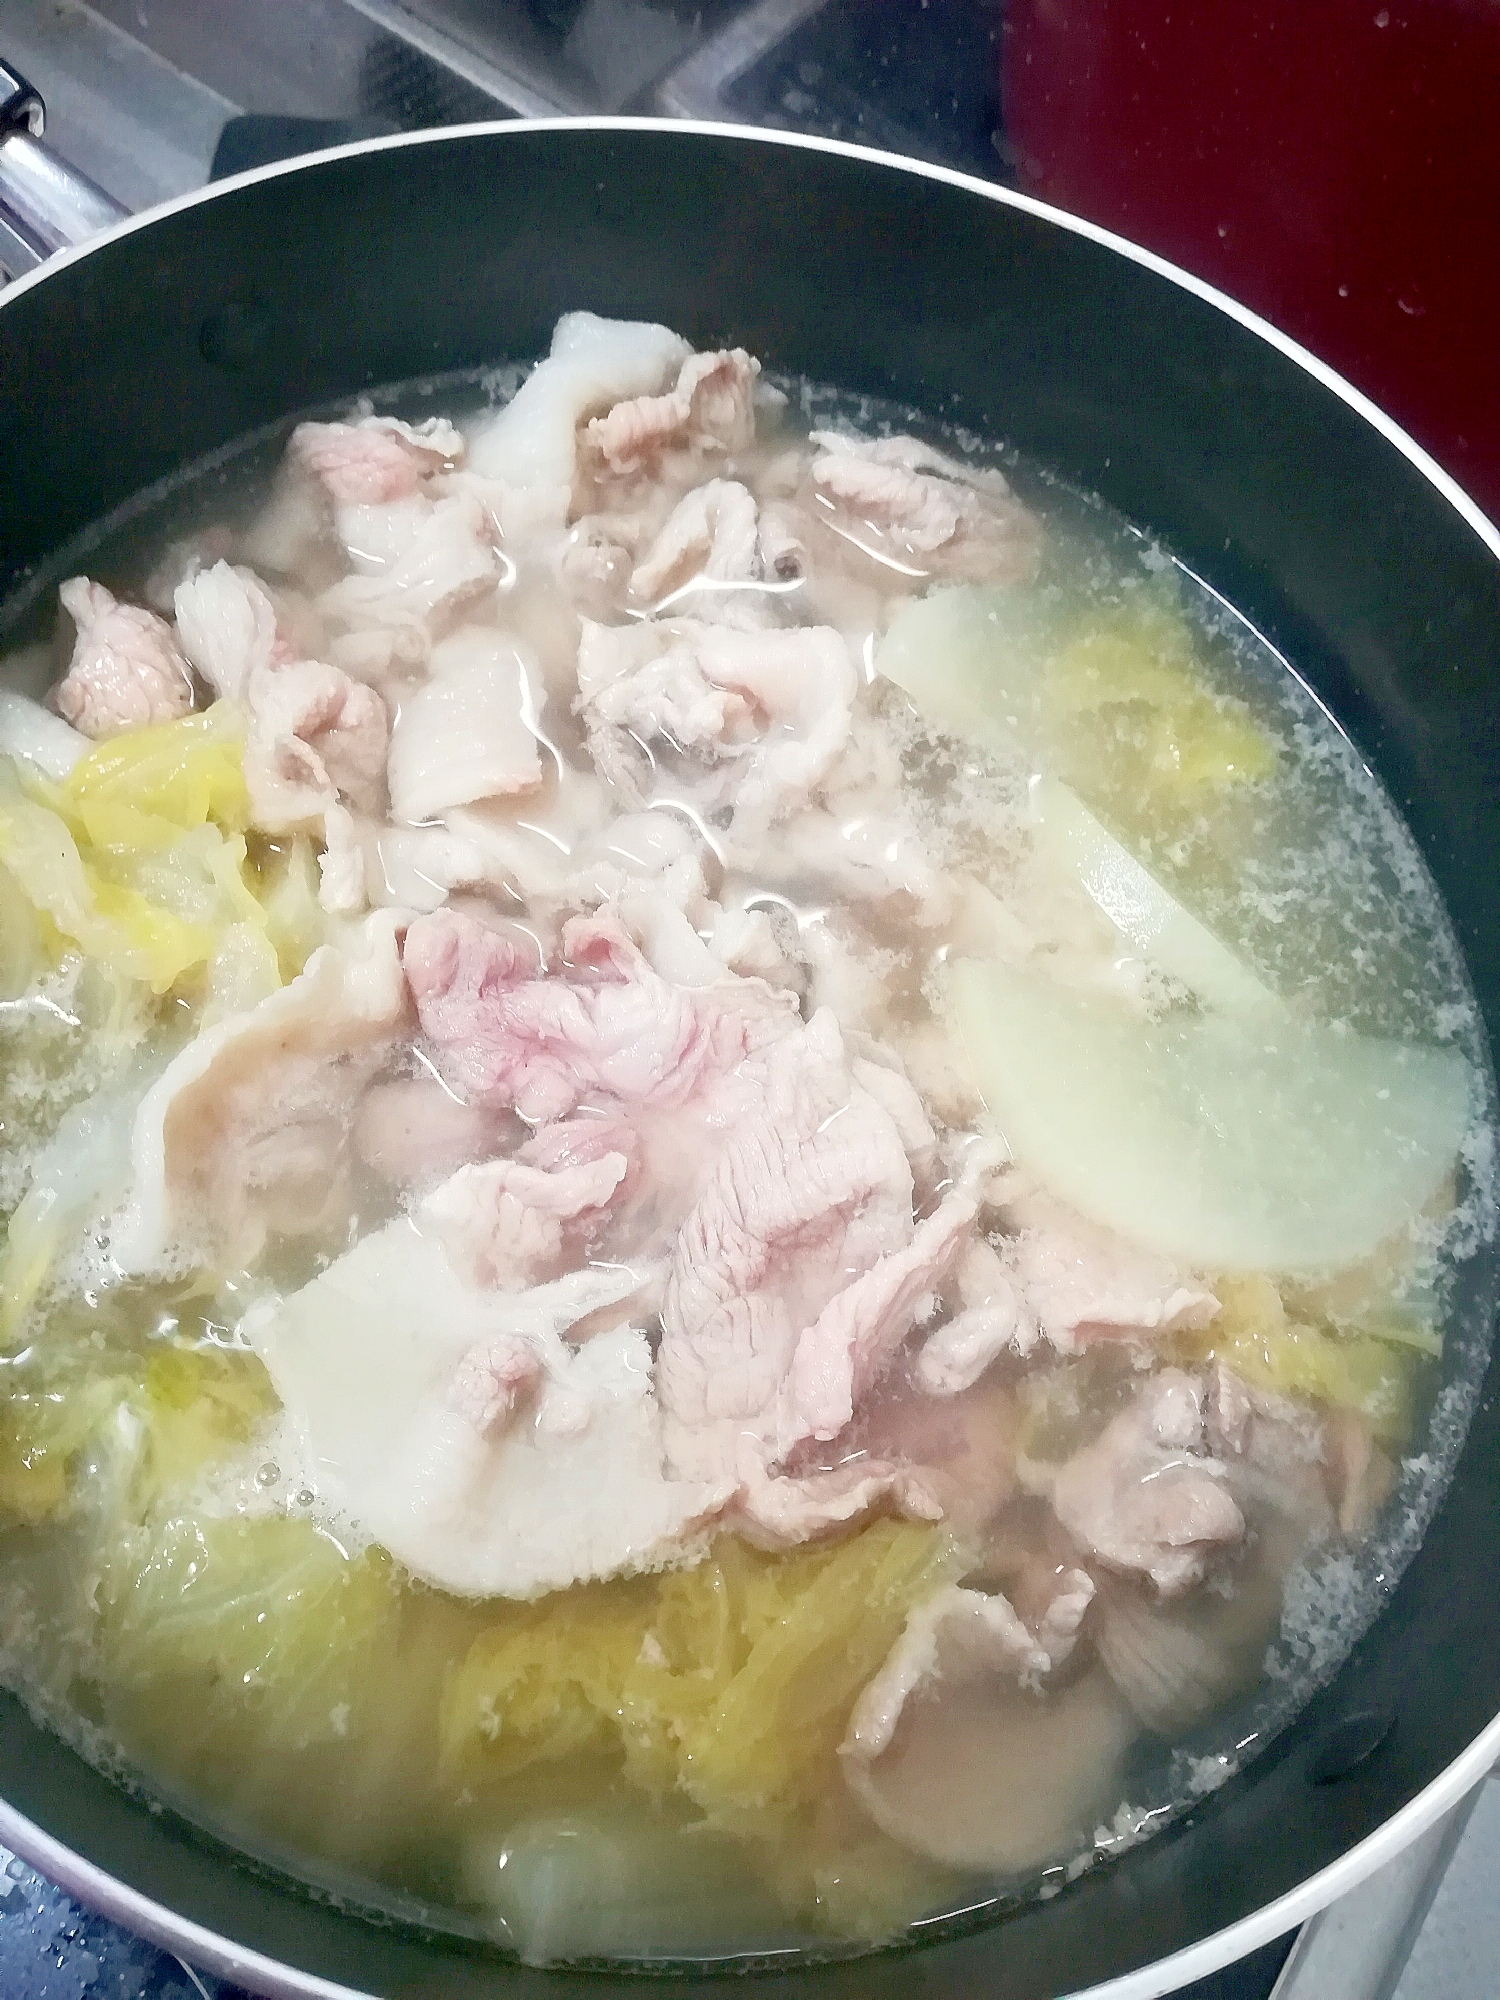 大根と白菜と豚肉の水炊き風☆ポン酢味